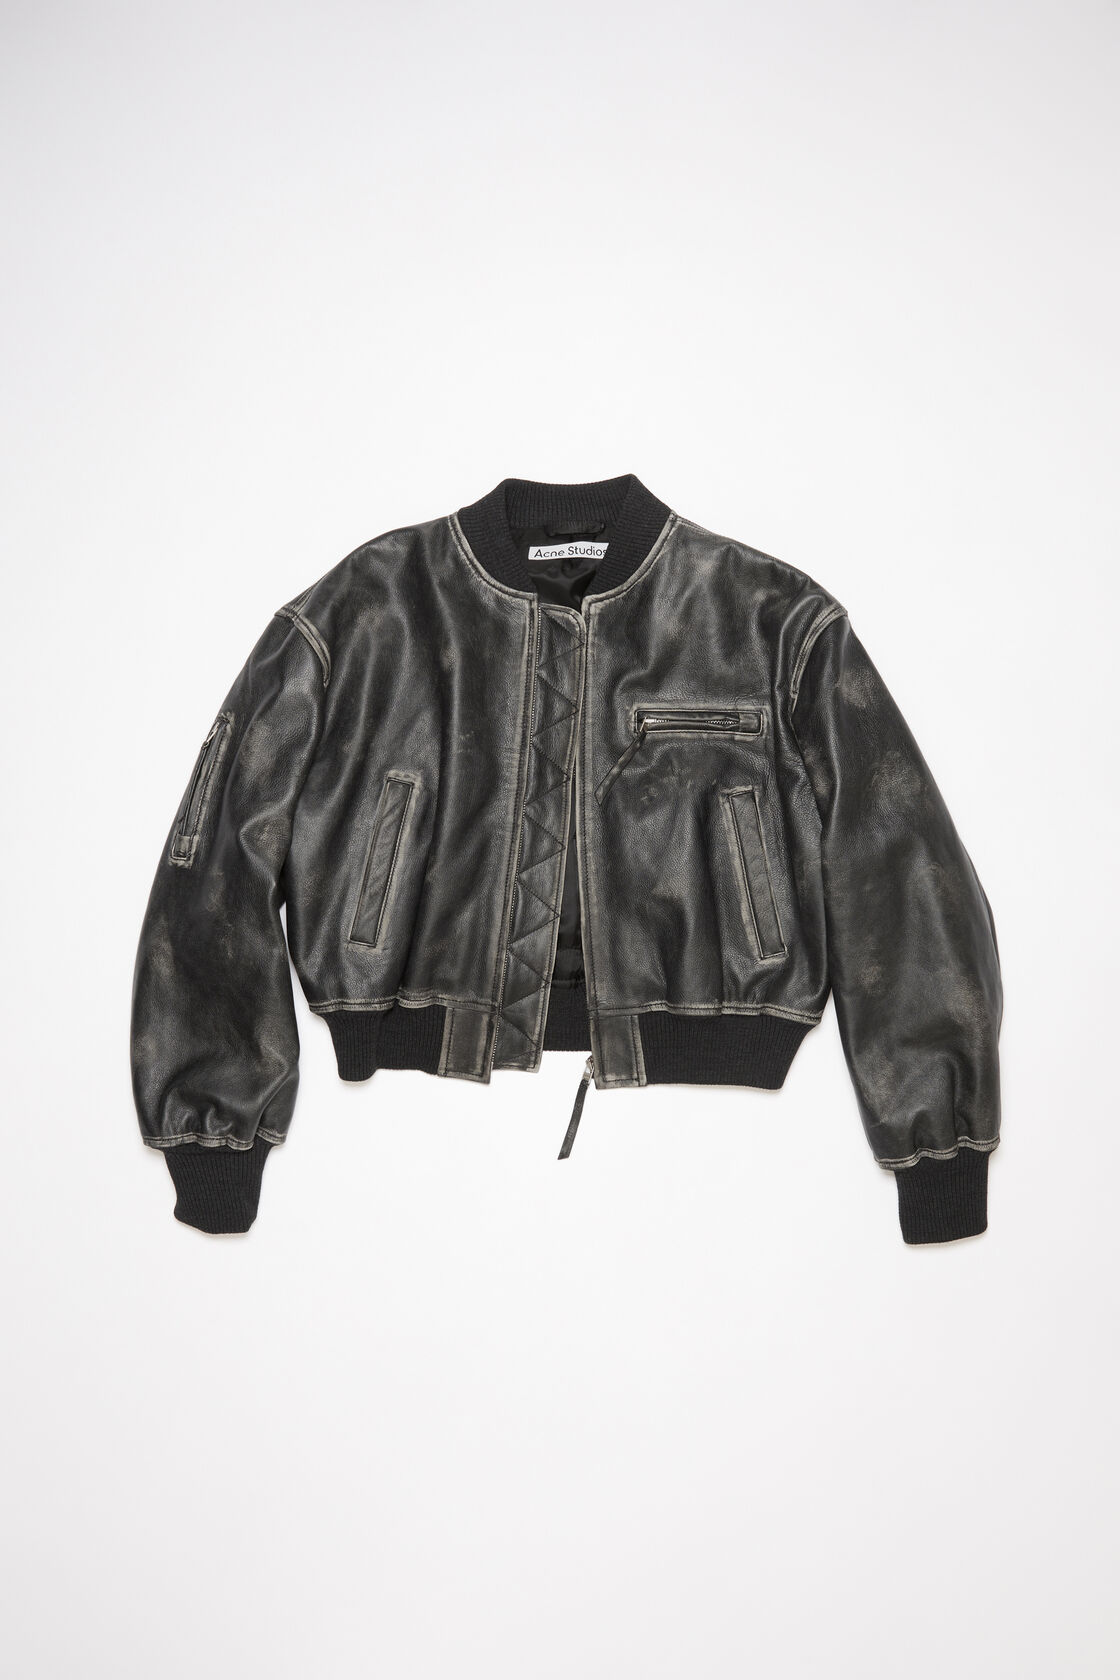 ACNE STUDIOS Leatherjacket in Vintage Black 36